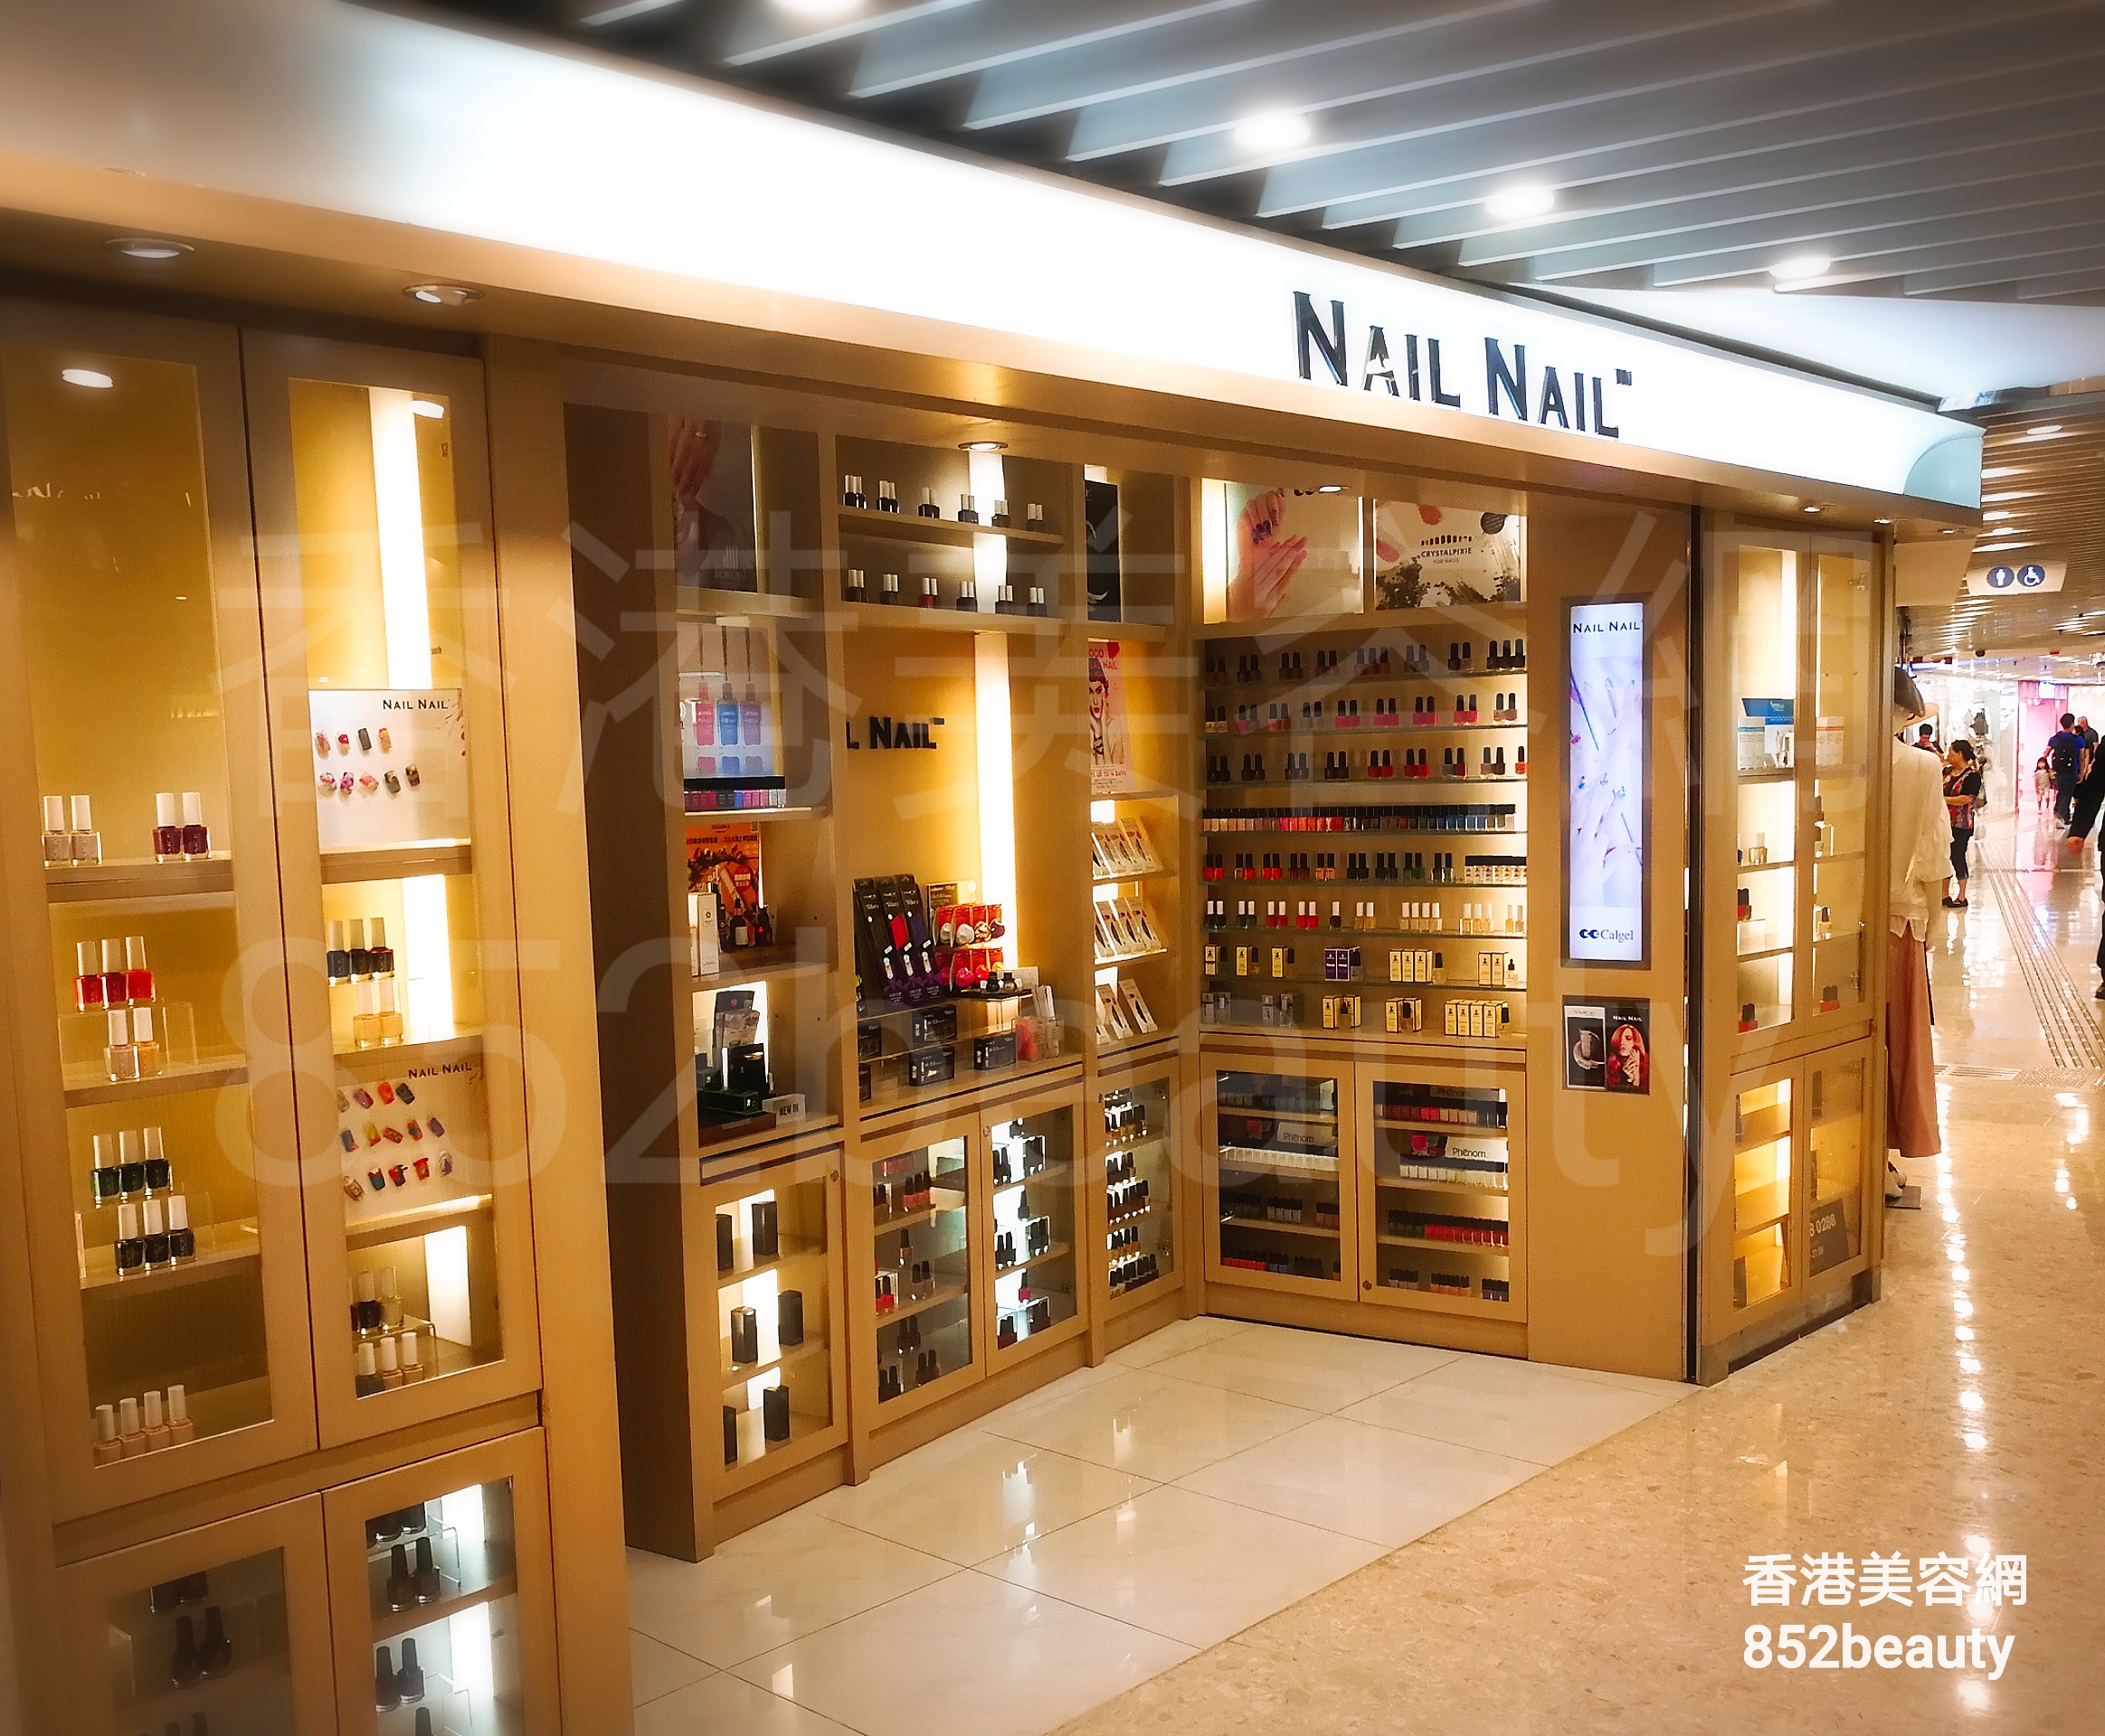 美容院 Beauty Salon 集团NAIL NAIL (沙田) @ 香港美容网 HK Beauty Salon